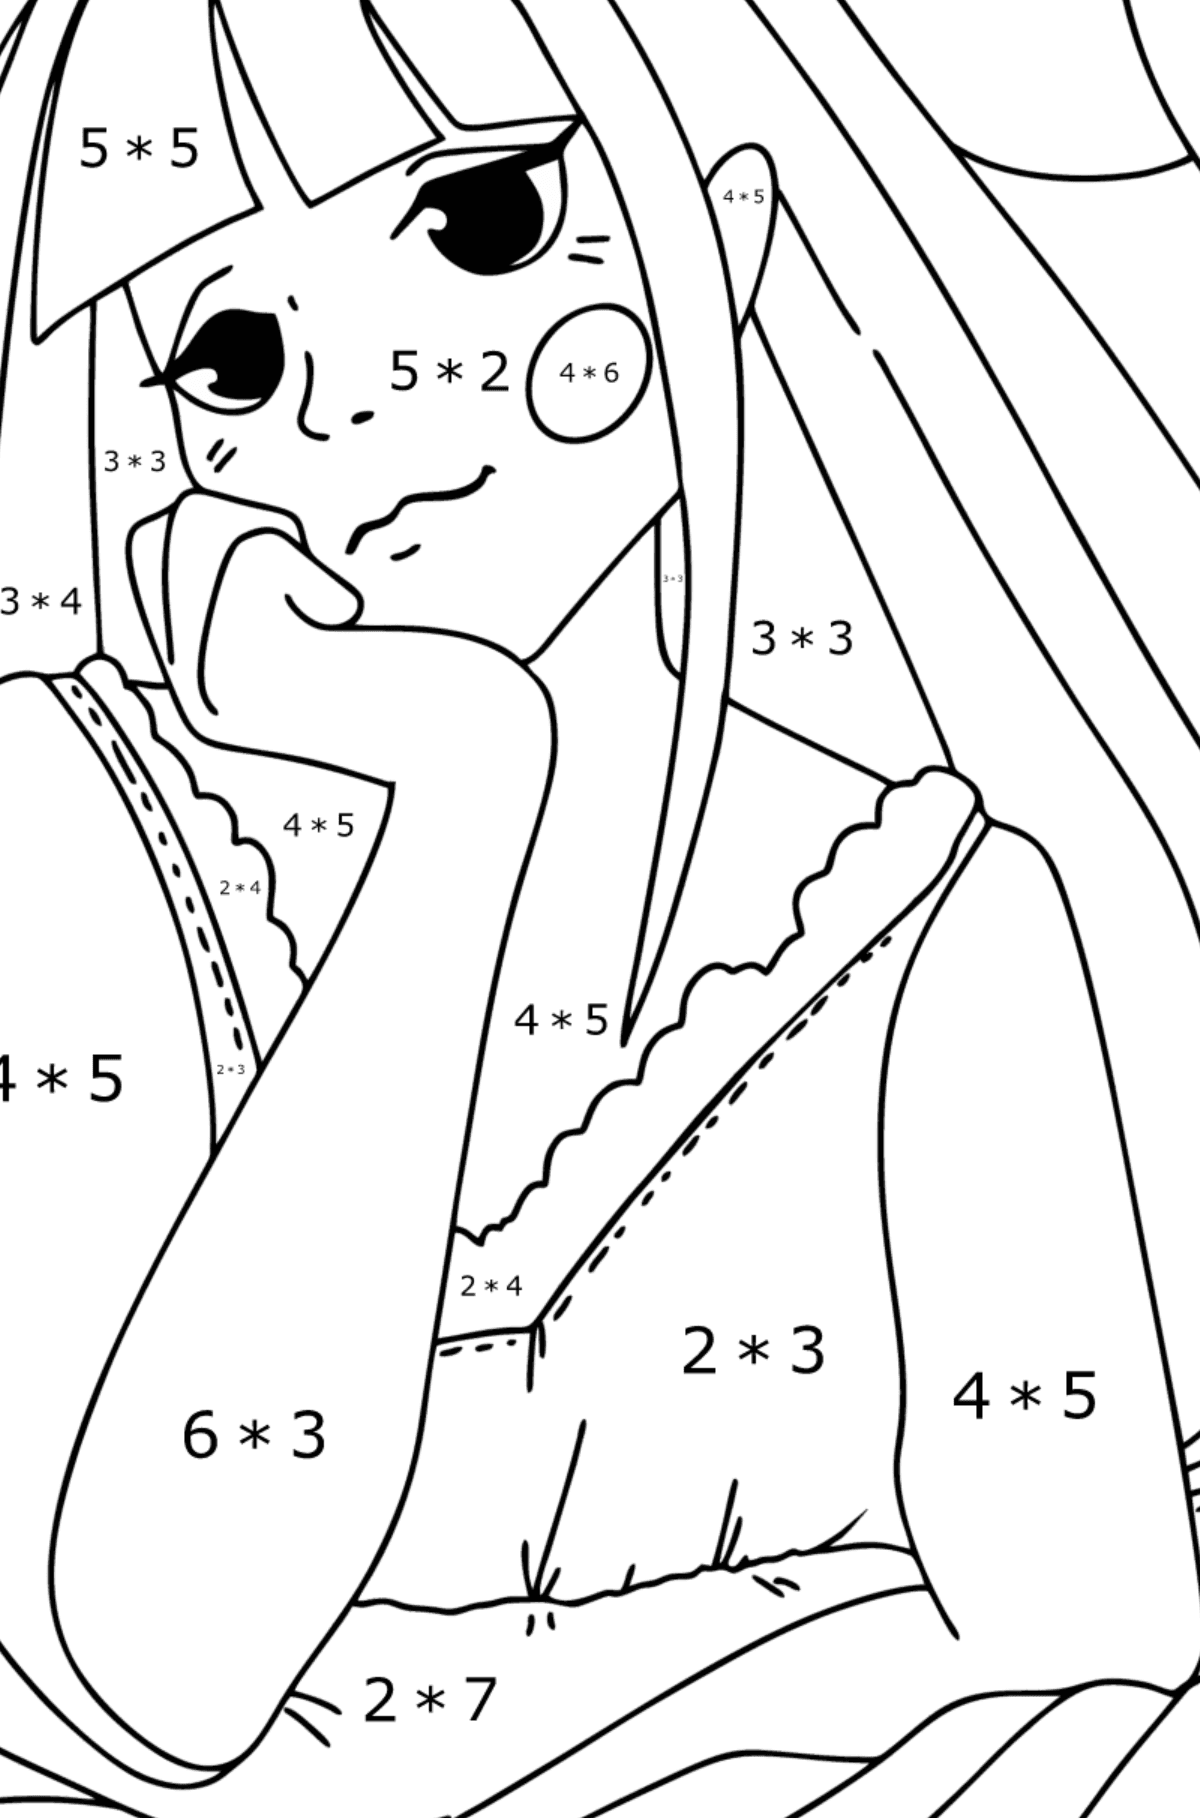 Omalovánka dívka dospívající anime - Matematická Omalovánka - Násobení pro děti